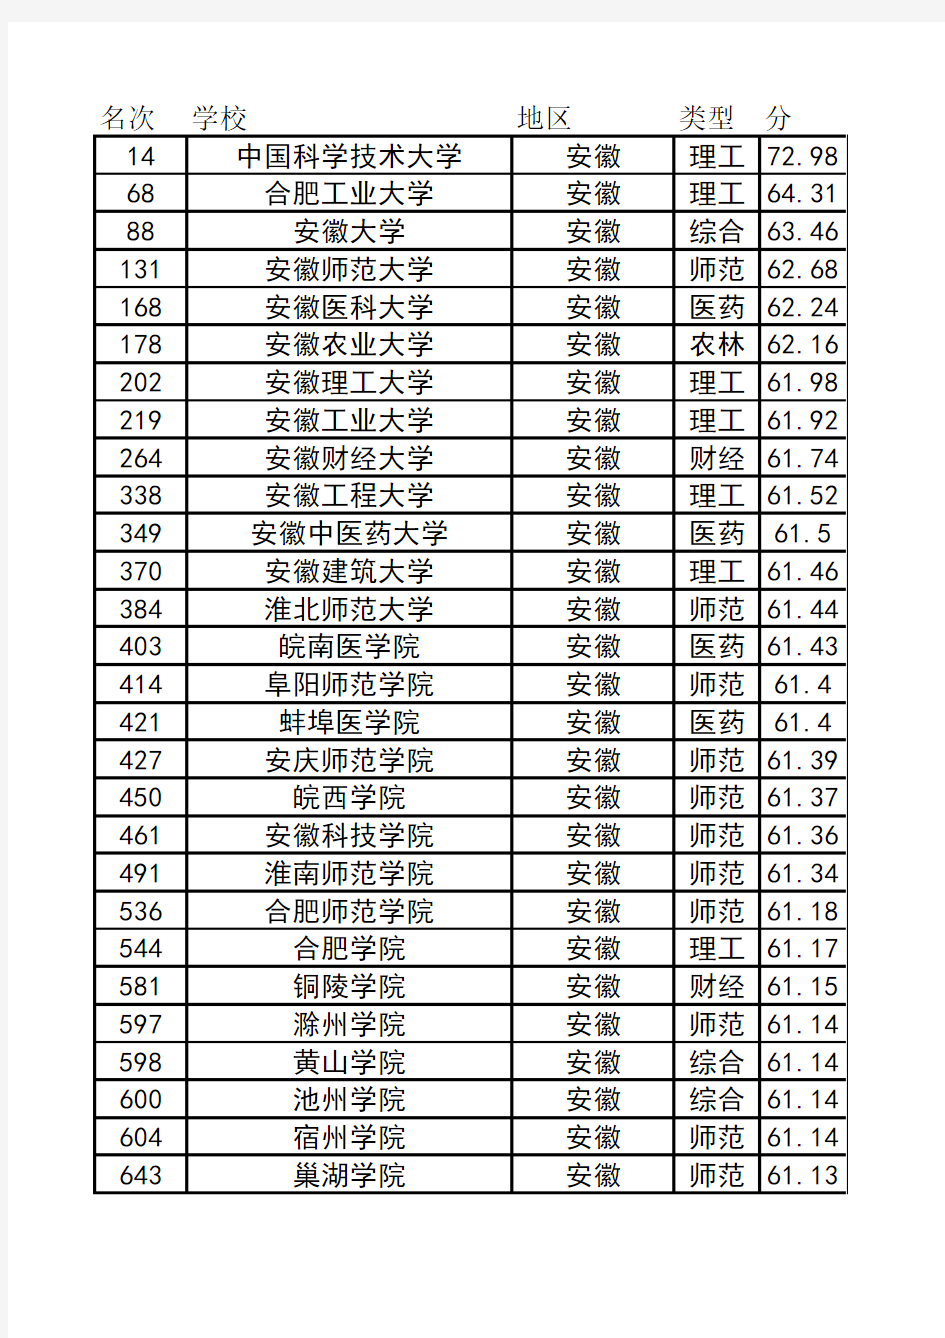 中国大学700强排名(按地区)